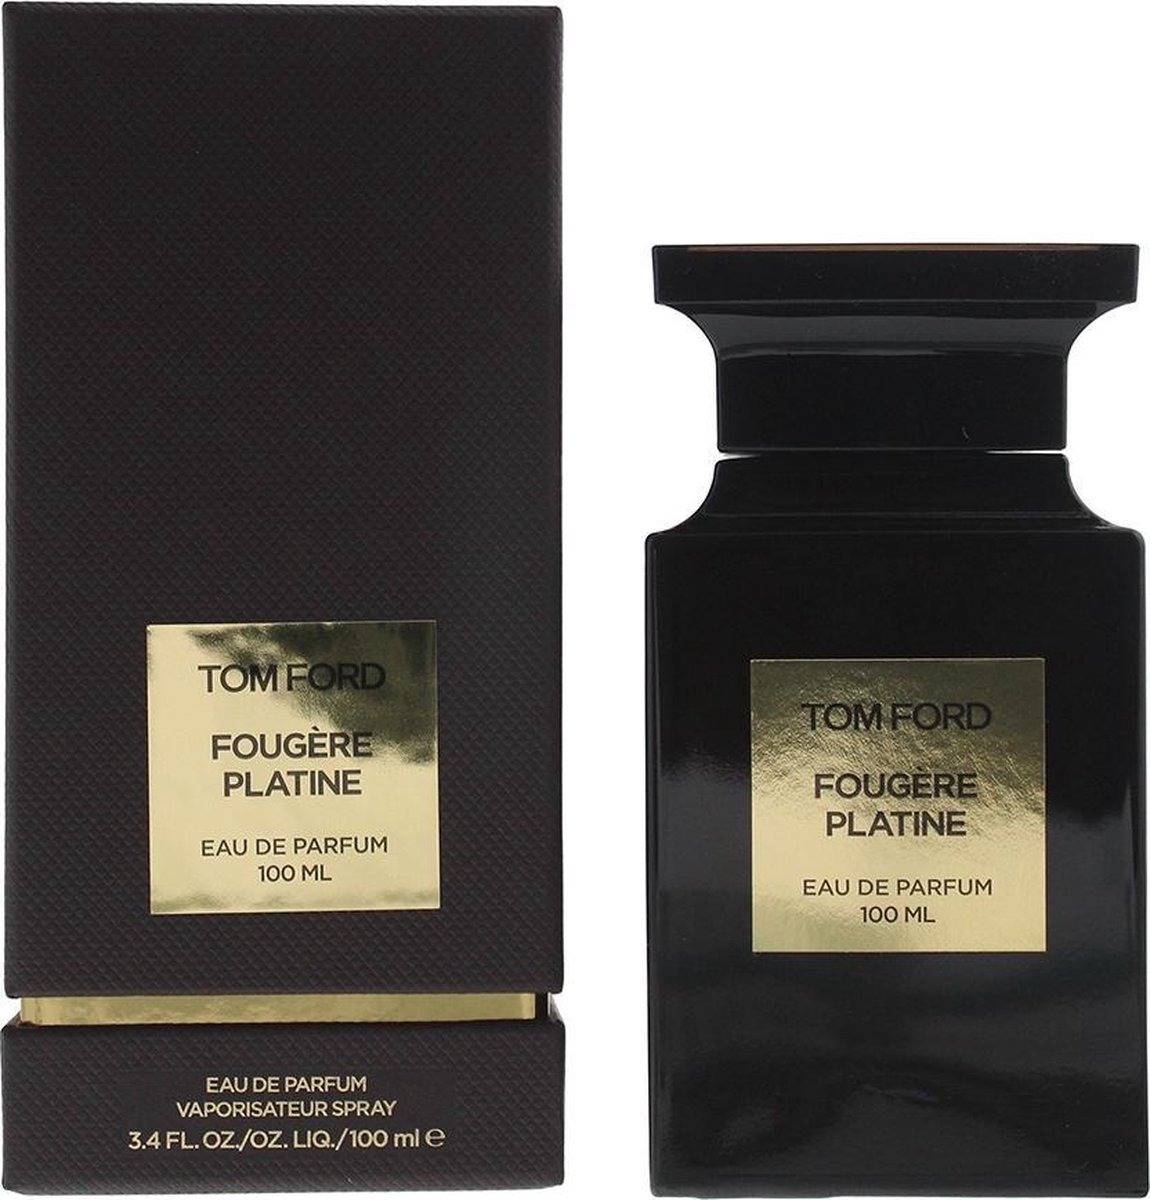 Tom Ford Fougere Platine - Eau de parfum spray - 100 ml 